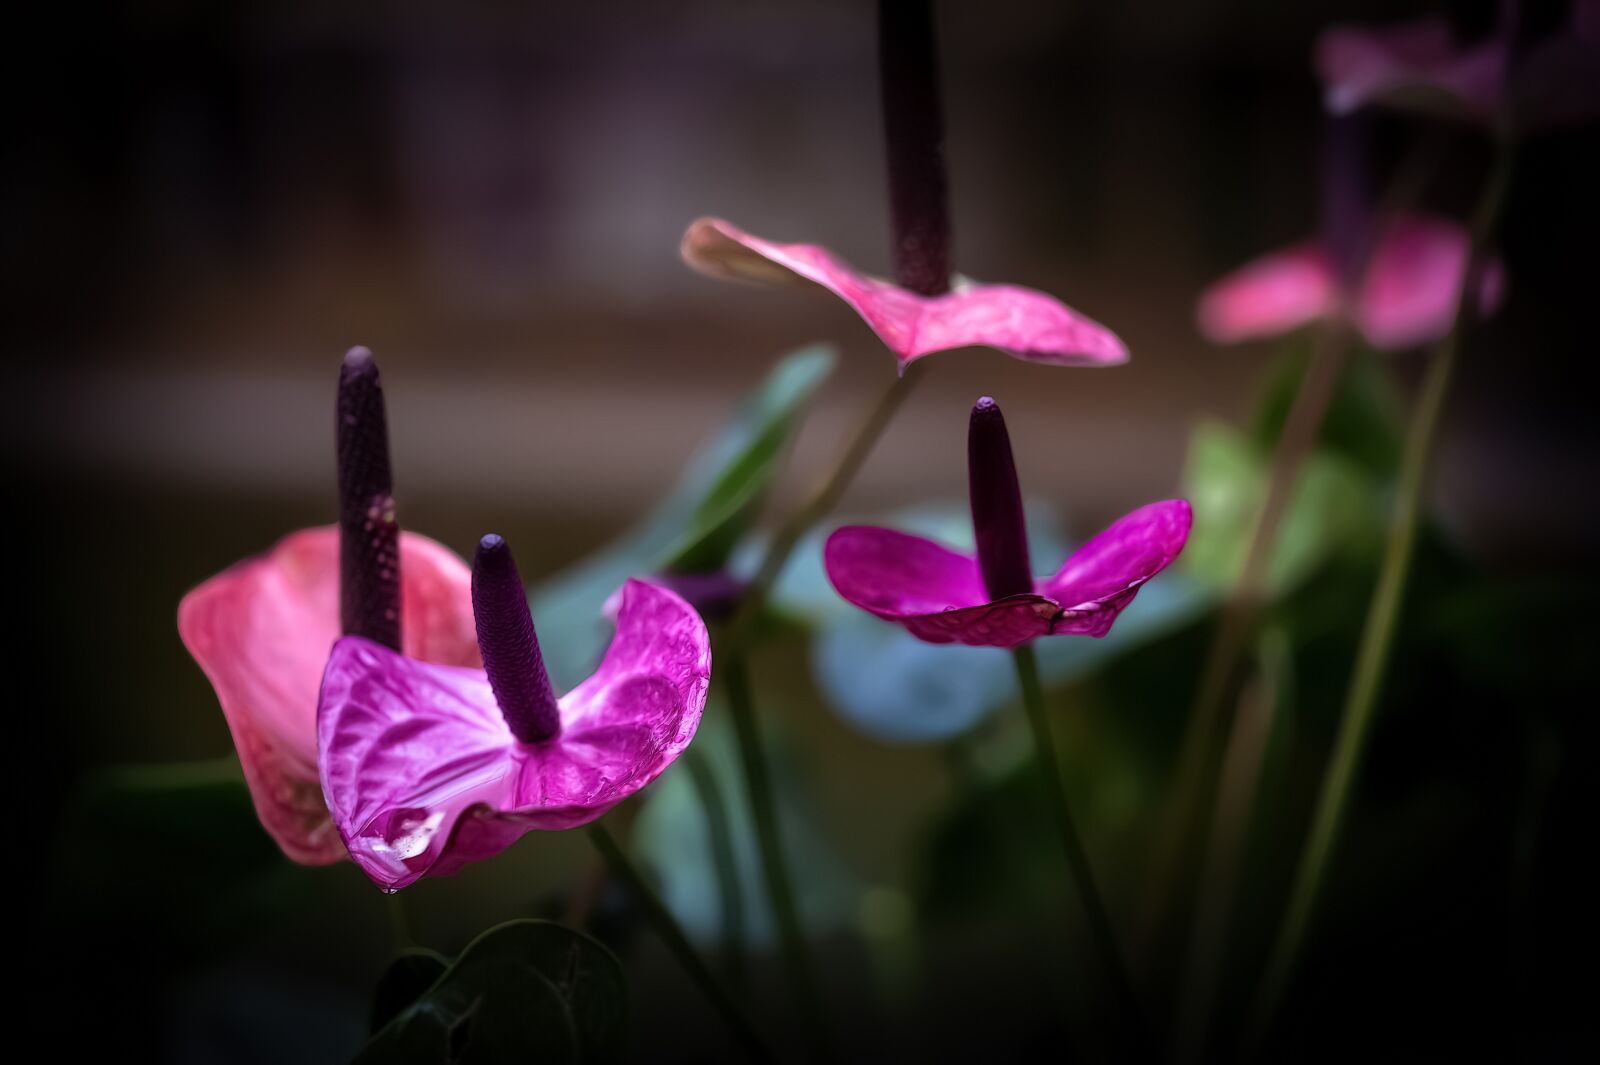 Nikon D4 sample photo. Laceleaf, anthurium, flower photography